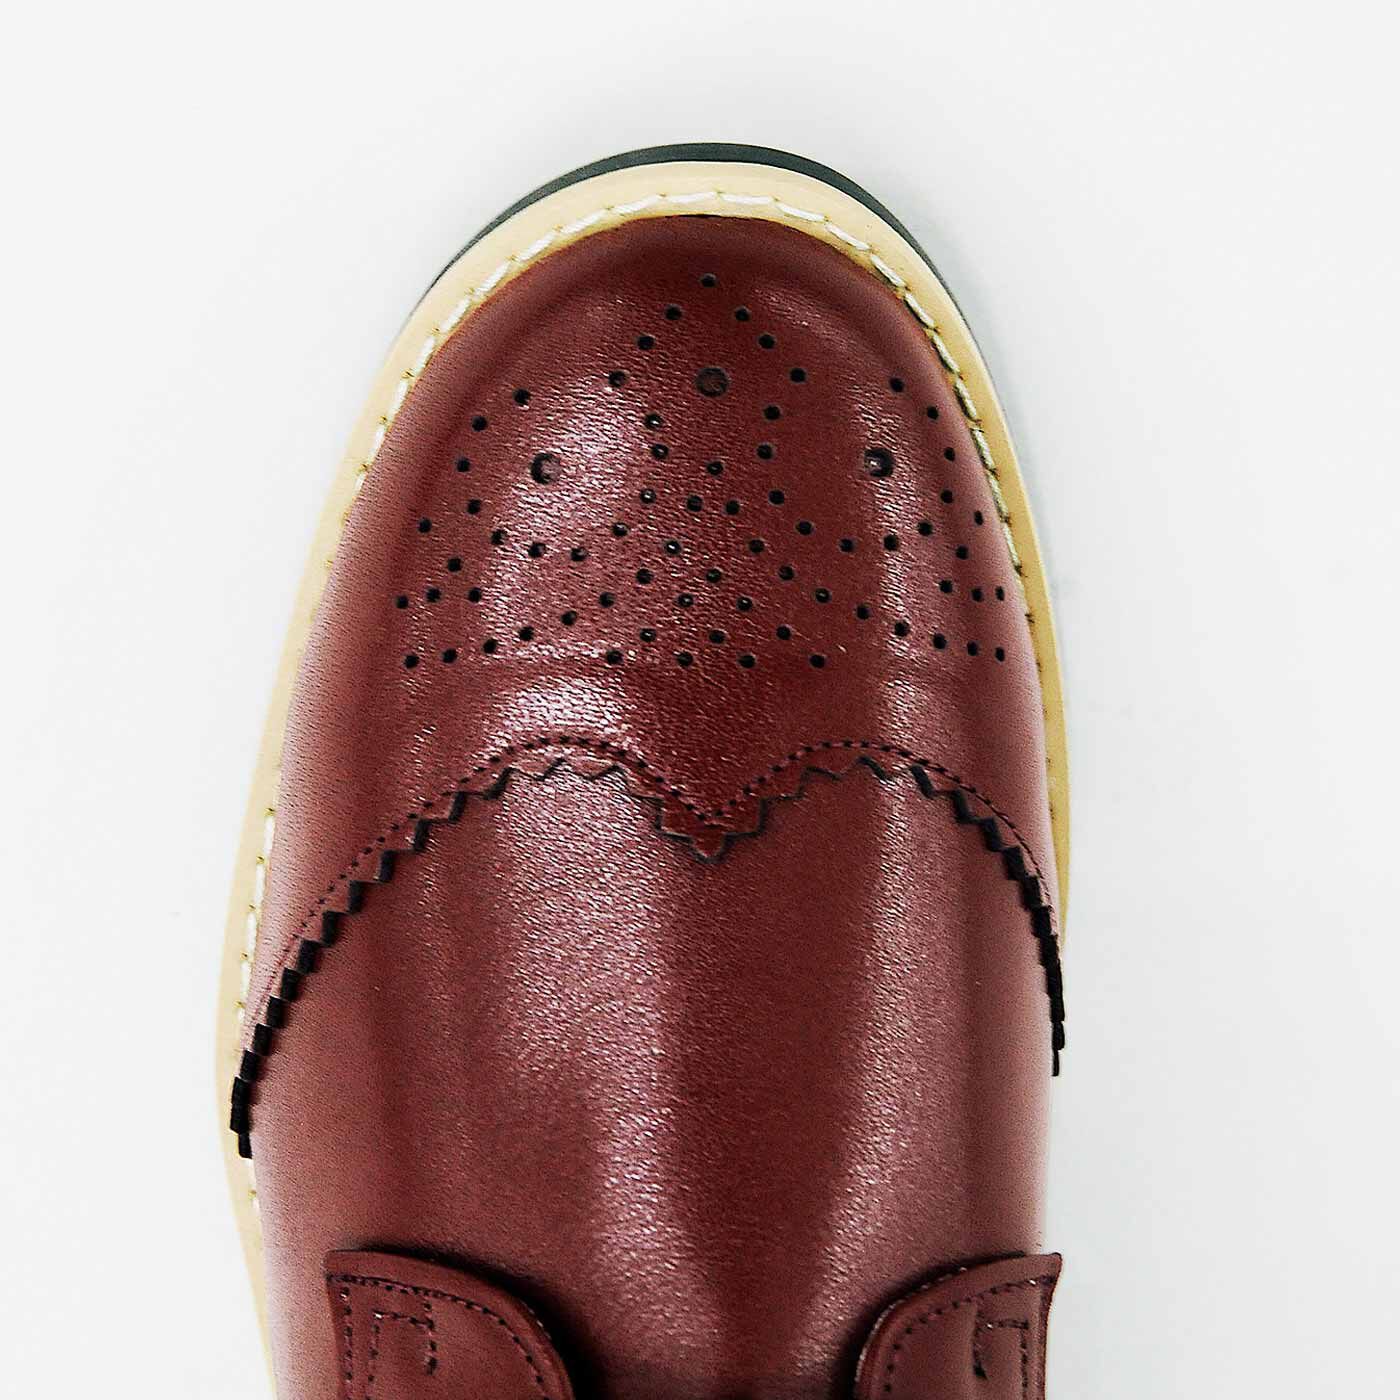 ＆Stories|長田靴職人が叶えた 理想の本革ウィングチップブーツ〈レッドブラウン〉[本革 ブーツ：日本製]|おしゃれなウィングチップデザイン。